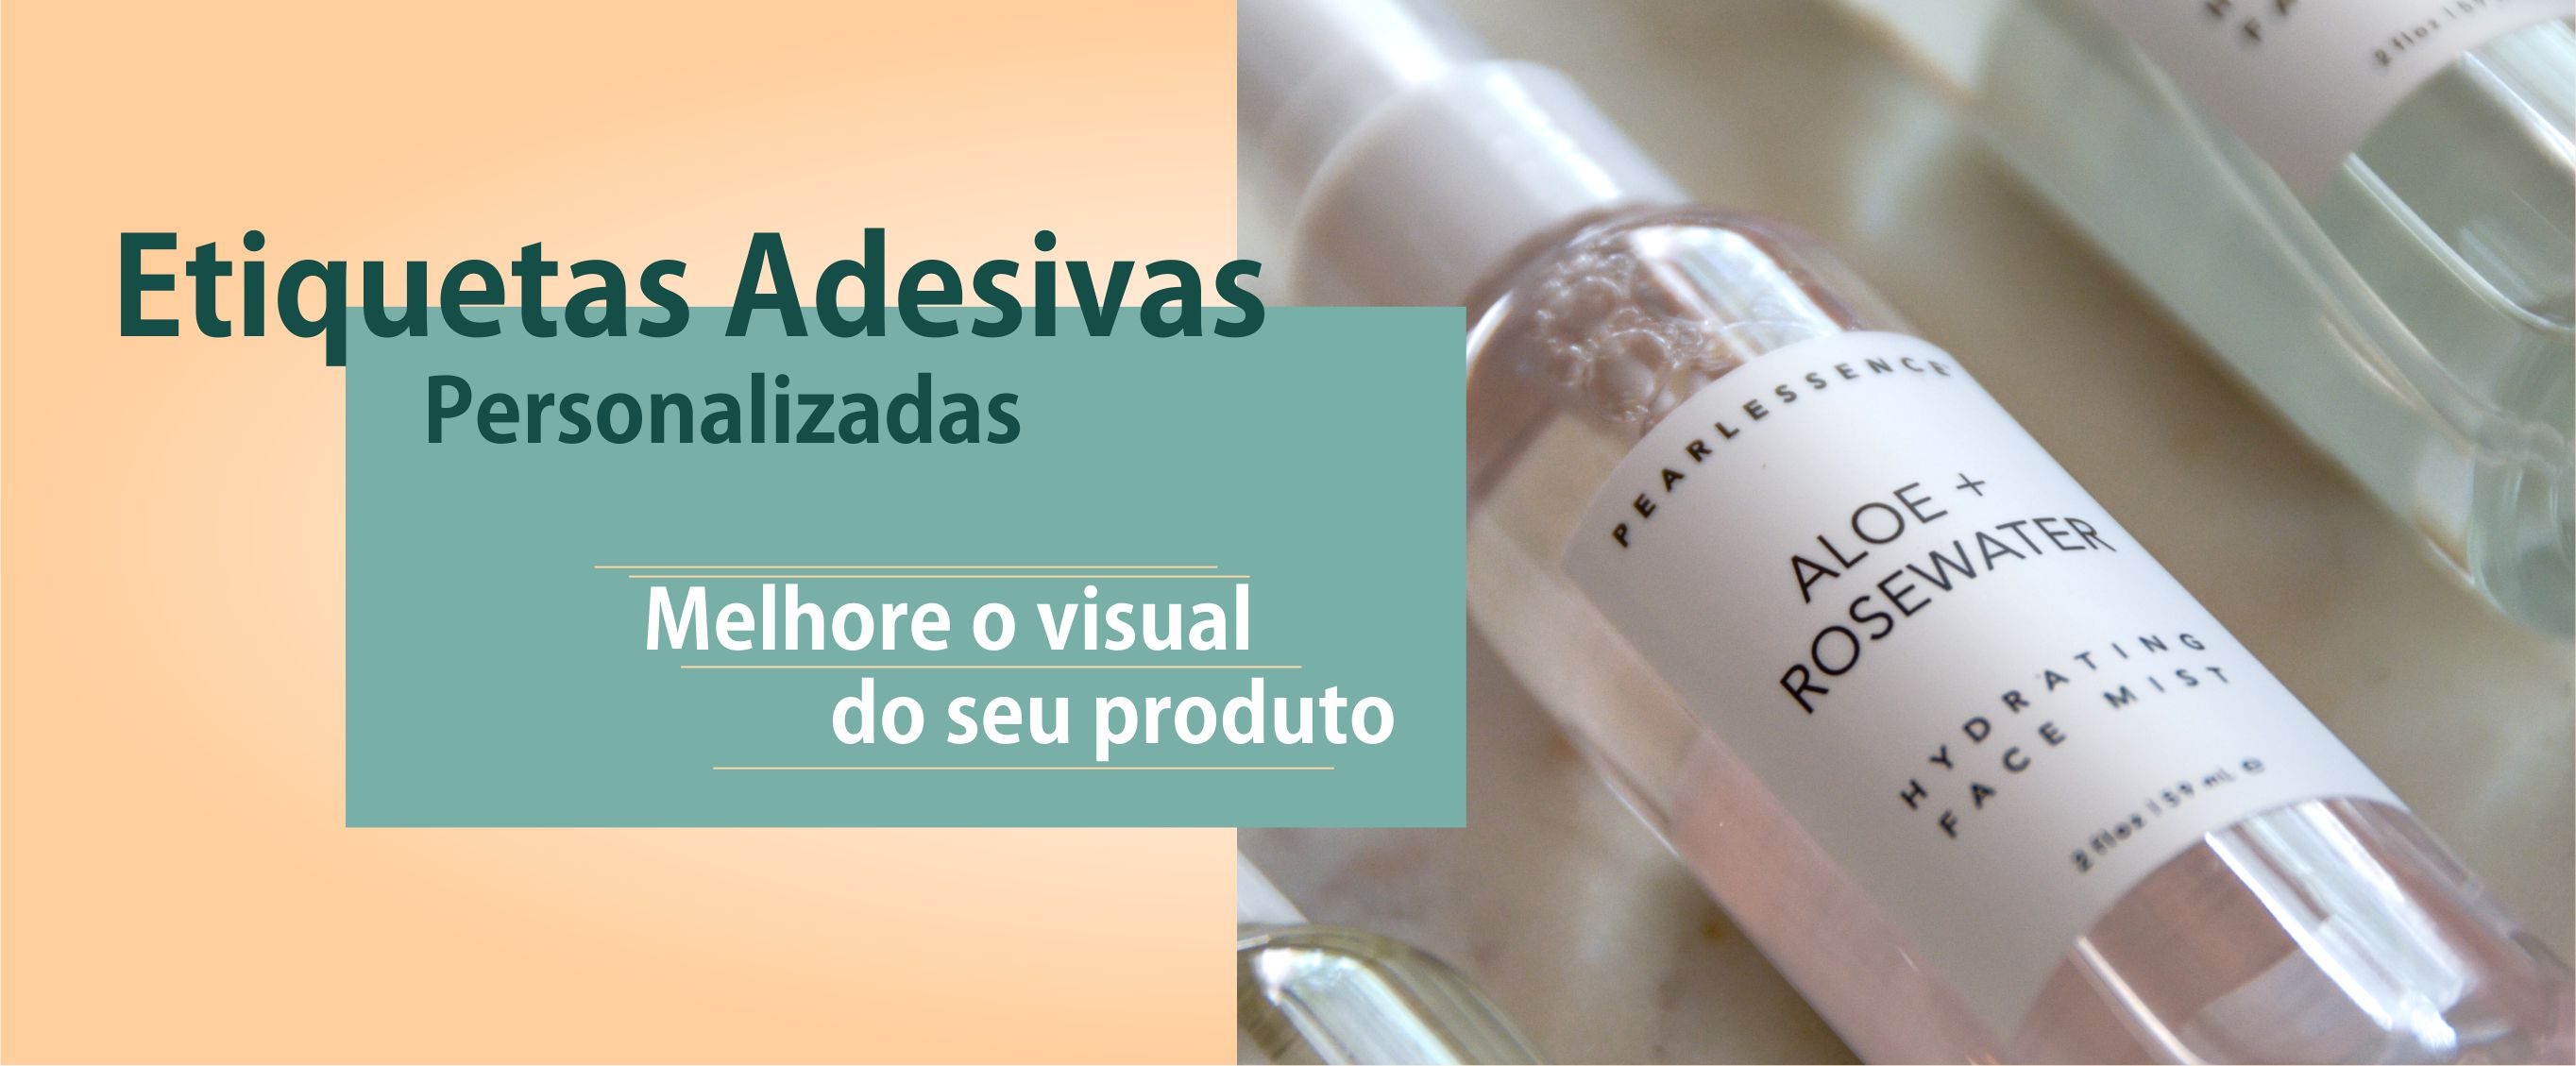 Imagem de Etiquetas Adesivas